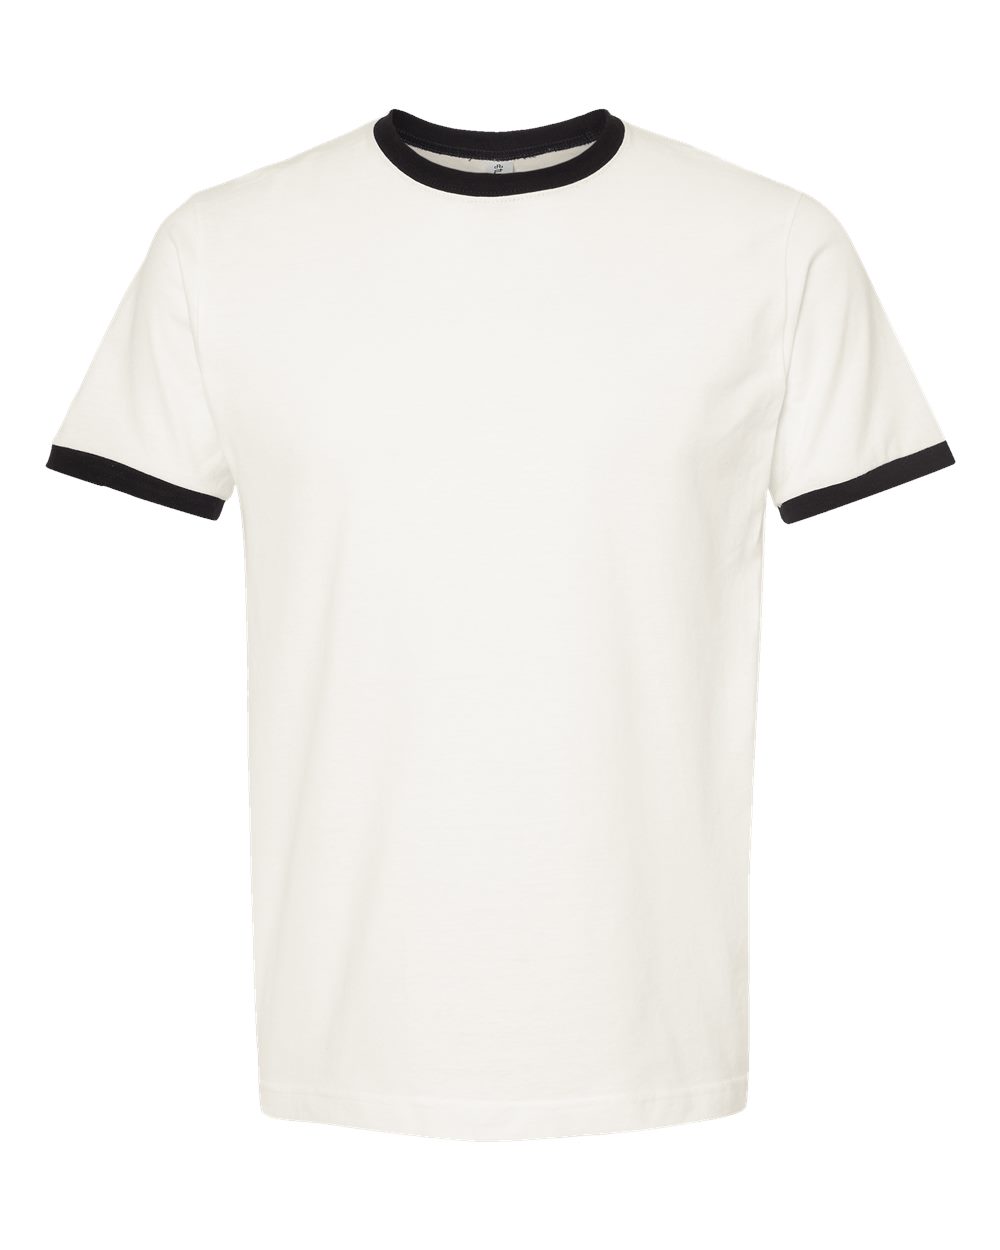 Tultex Men Short Sleeve Fine Jersey Ringer T-Shirt 246 Up To 3XL | eBay